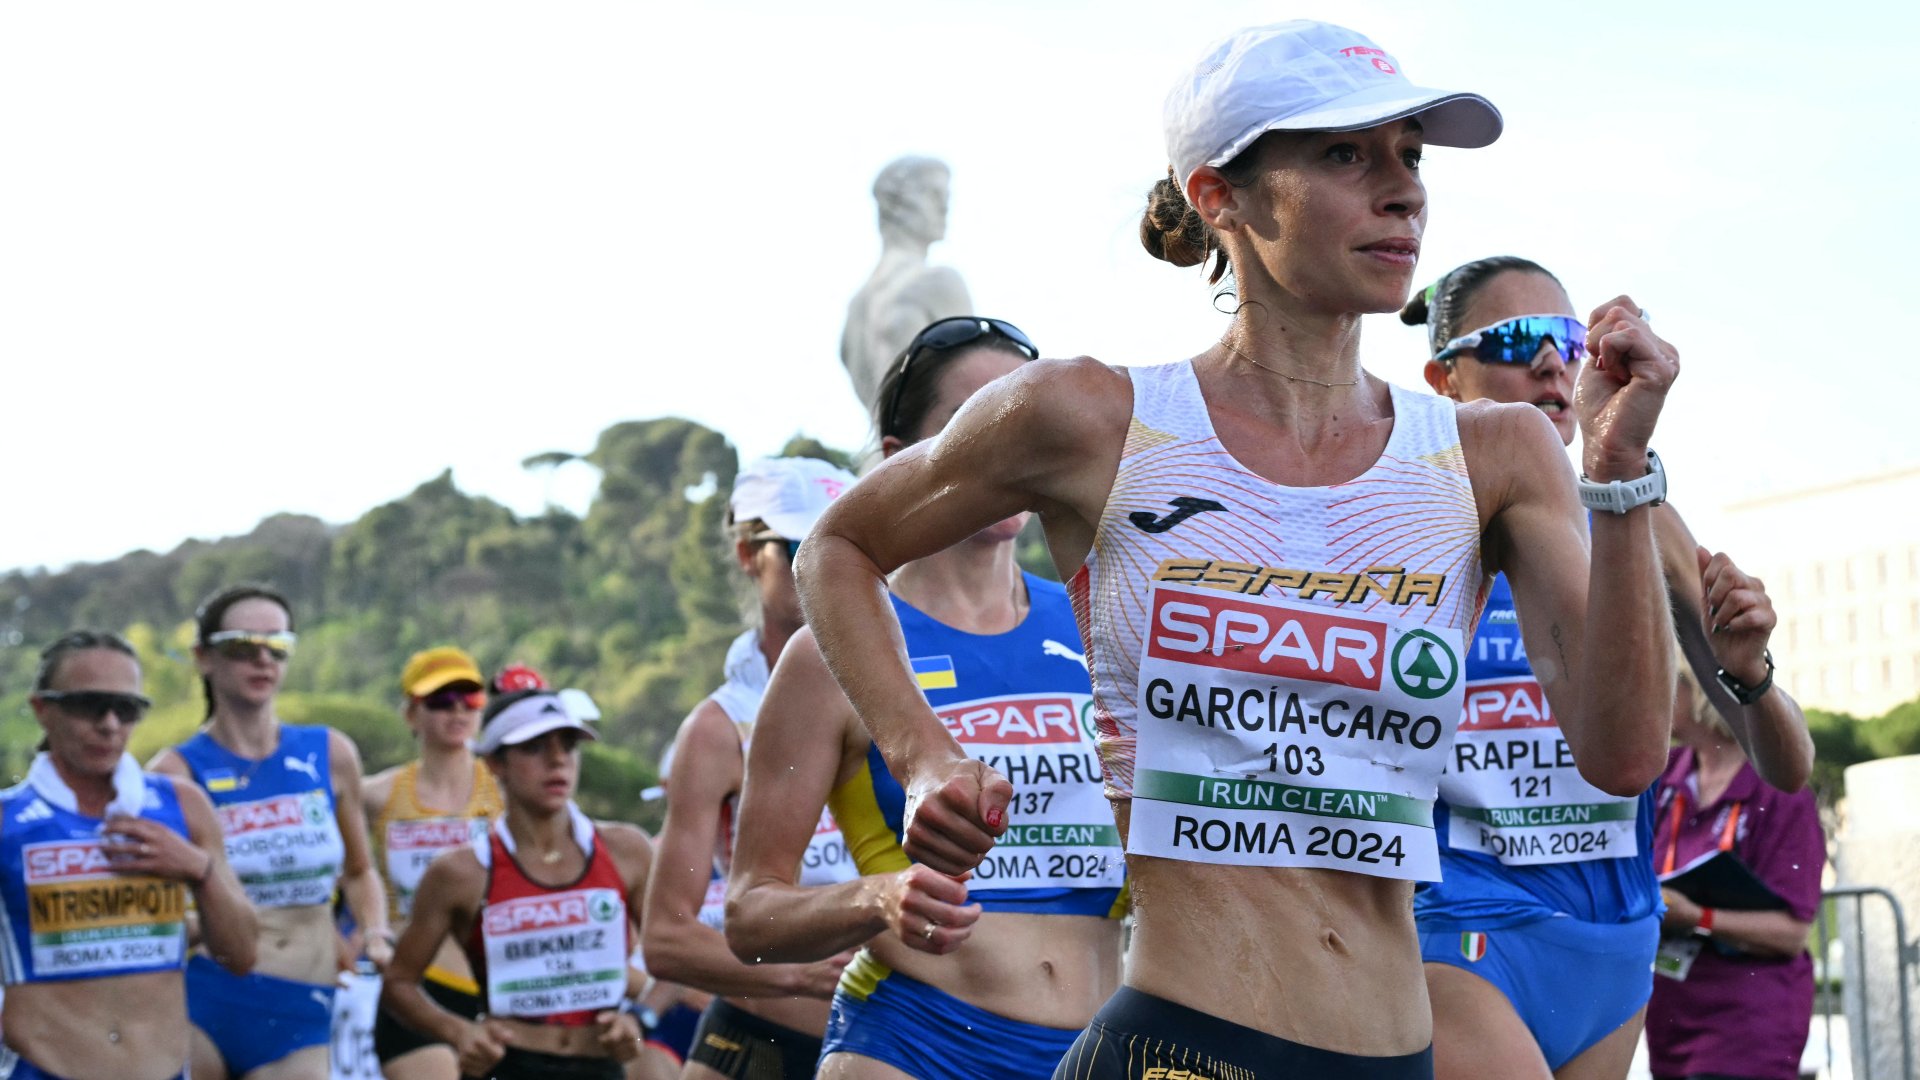 Laura Garcia-Caro spanyol atléta a női 20 km-es gyaloglás döntőjében az atlétikai Európa-bajnokságon a római Olimpiai Stadionban 2024. június 7-én